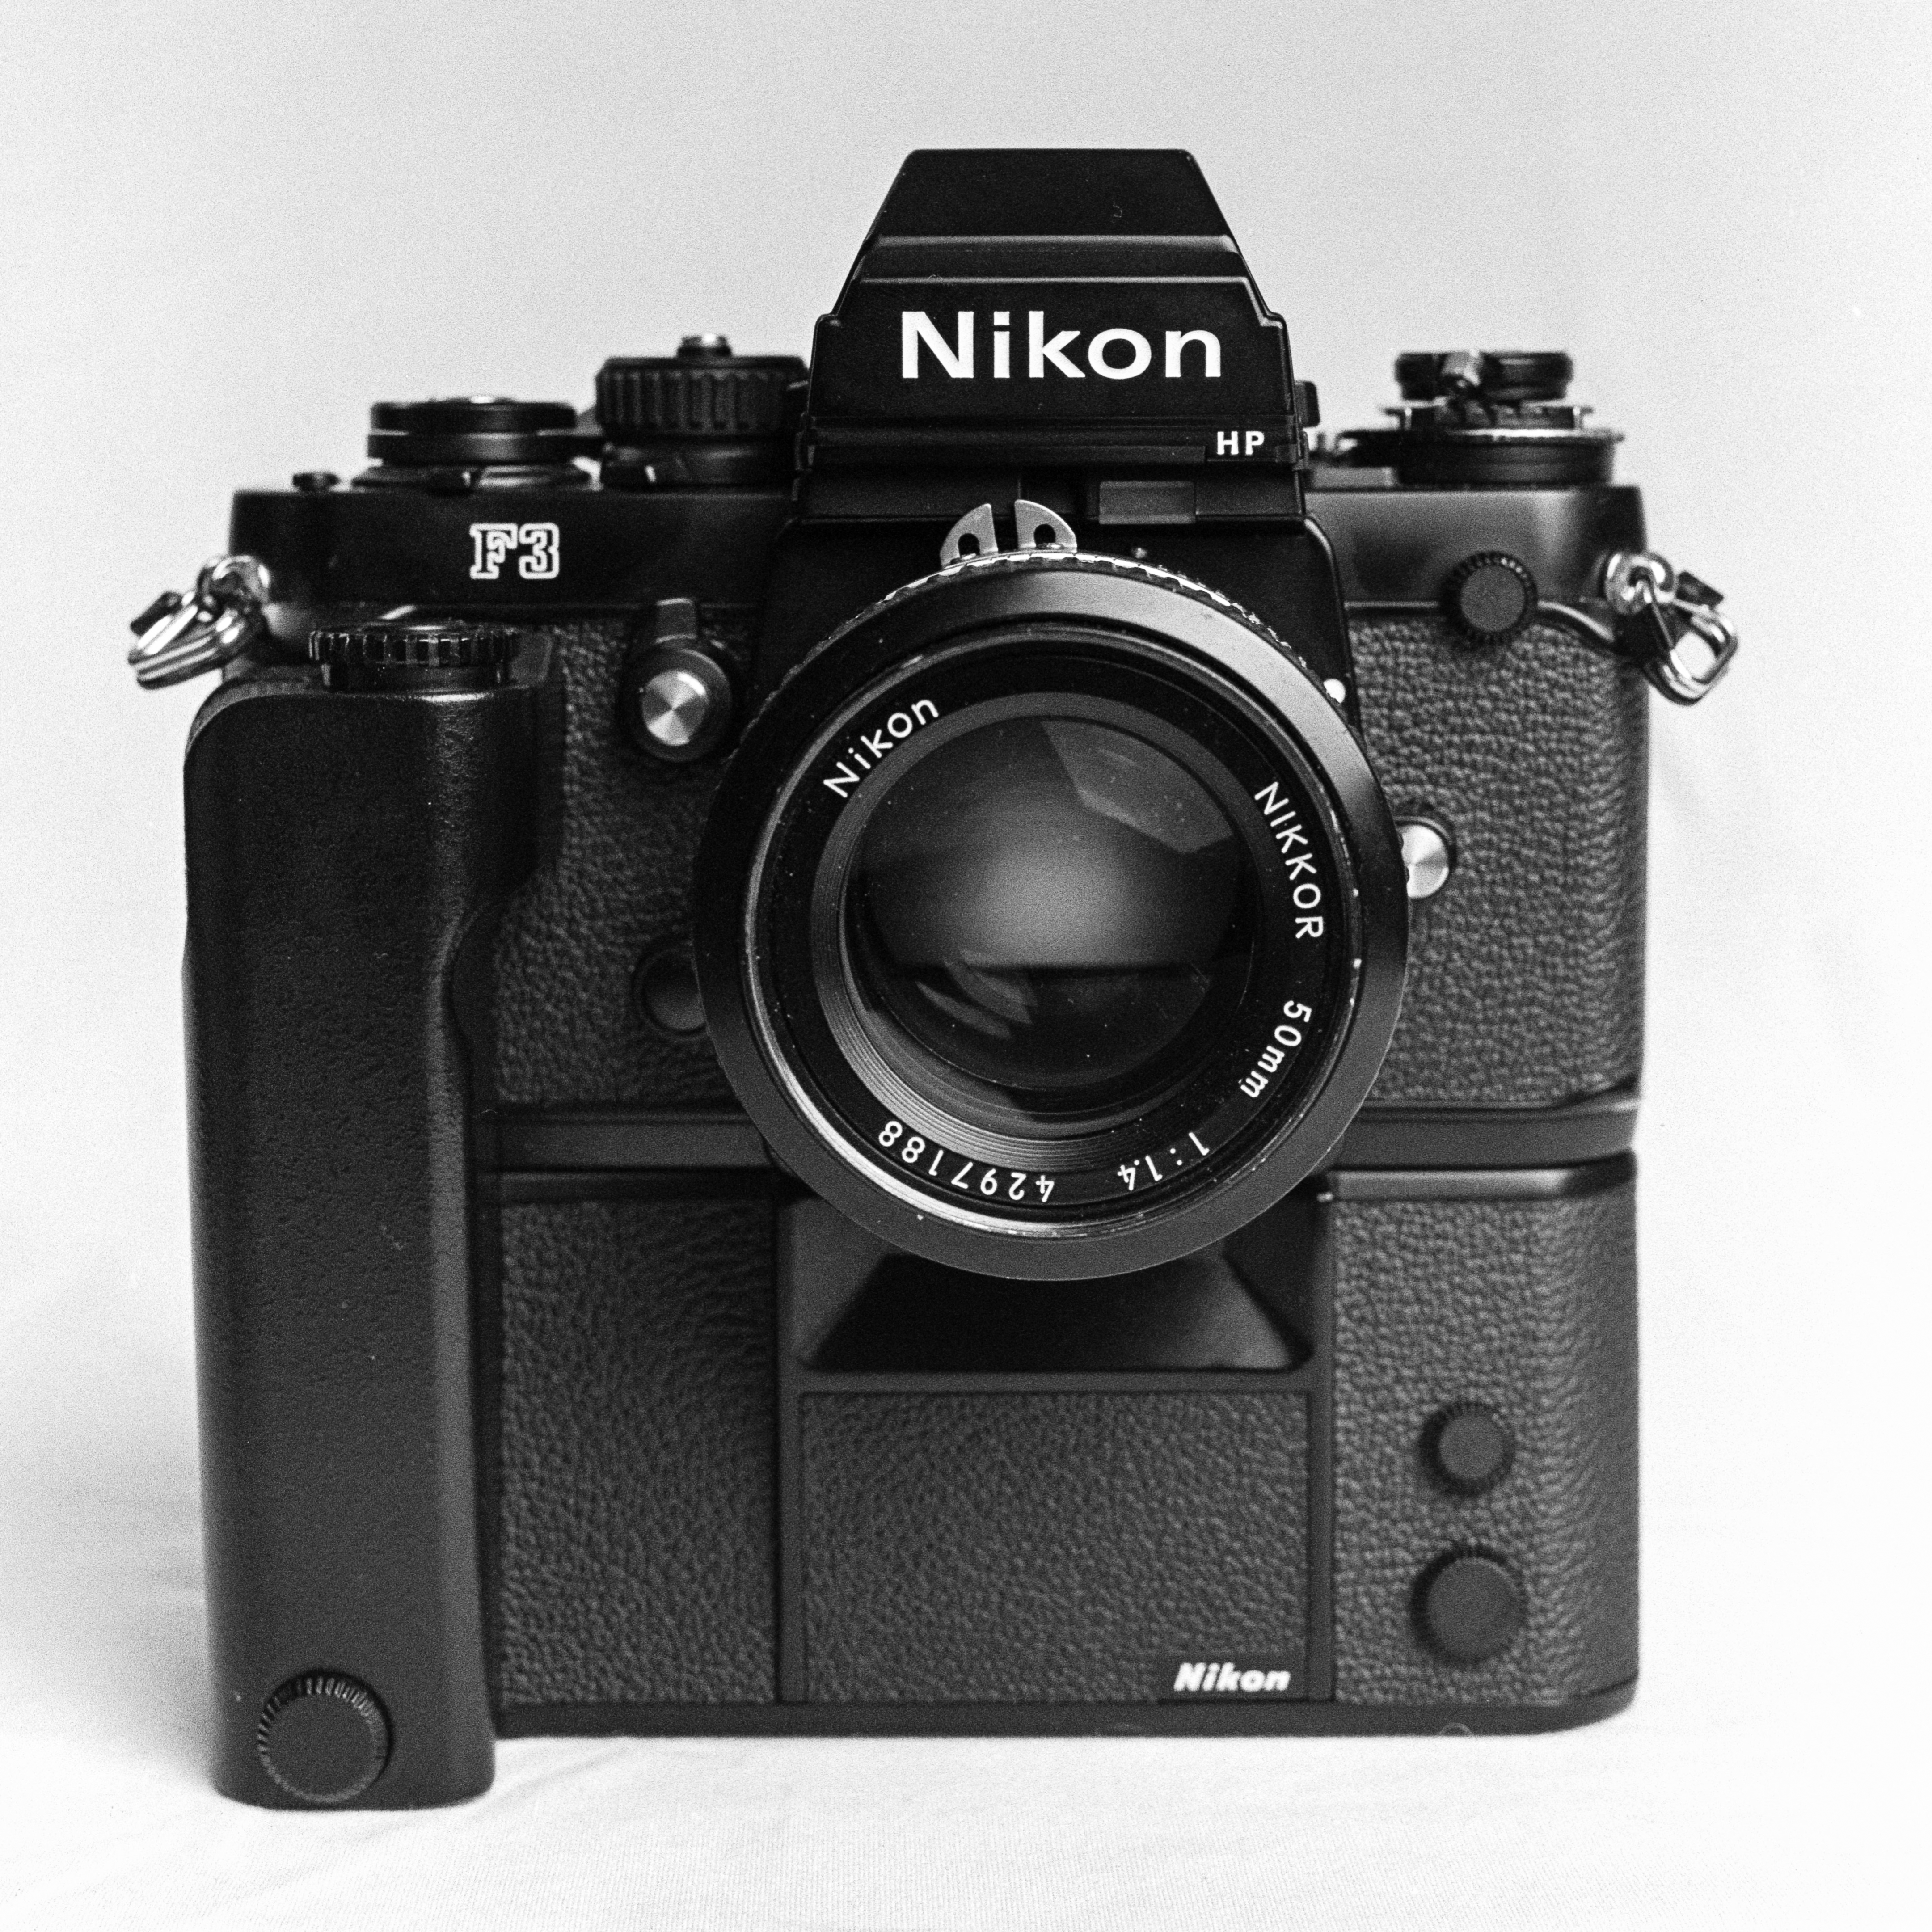 Nikon F3HP with motor drive